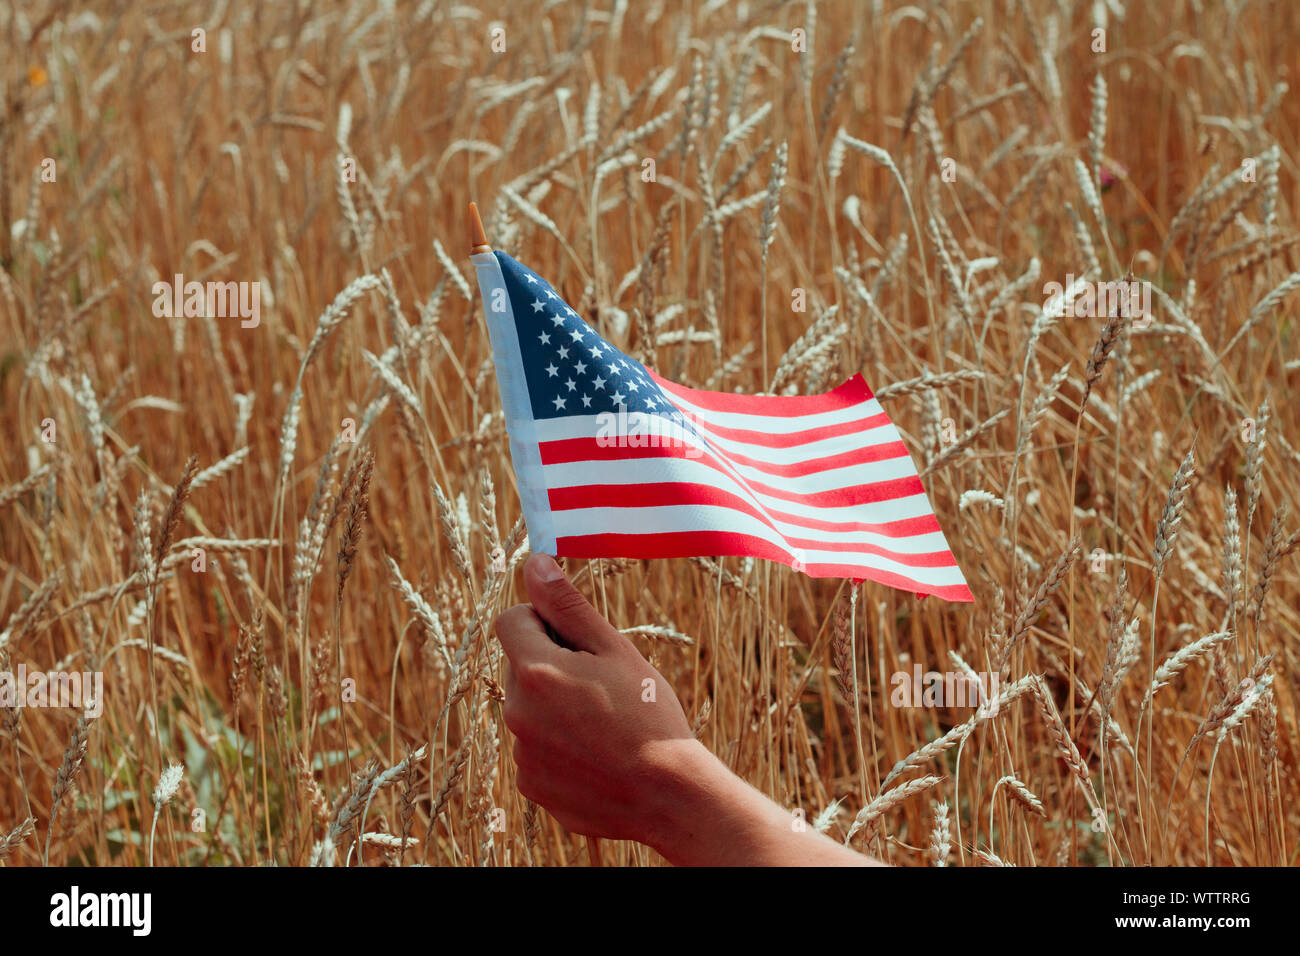 Hombre mano sosteniendo la bandera de Estados Unidos sobre un fondo dorado de espigas de trigo en un campo Foto de stock